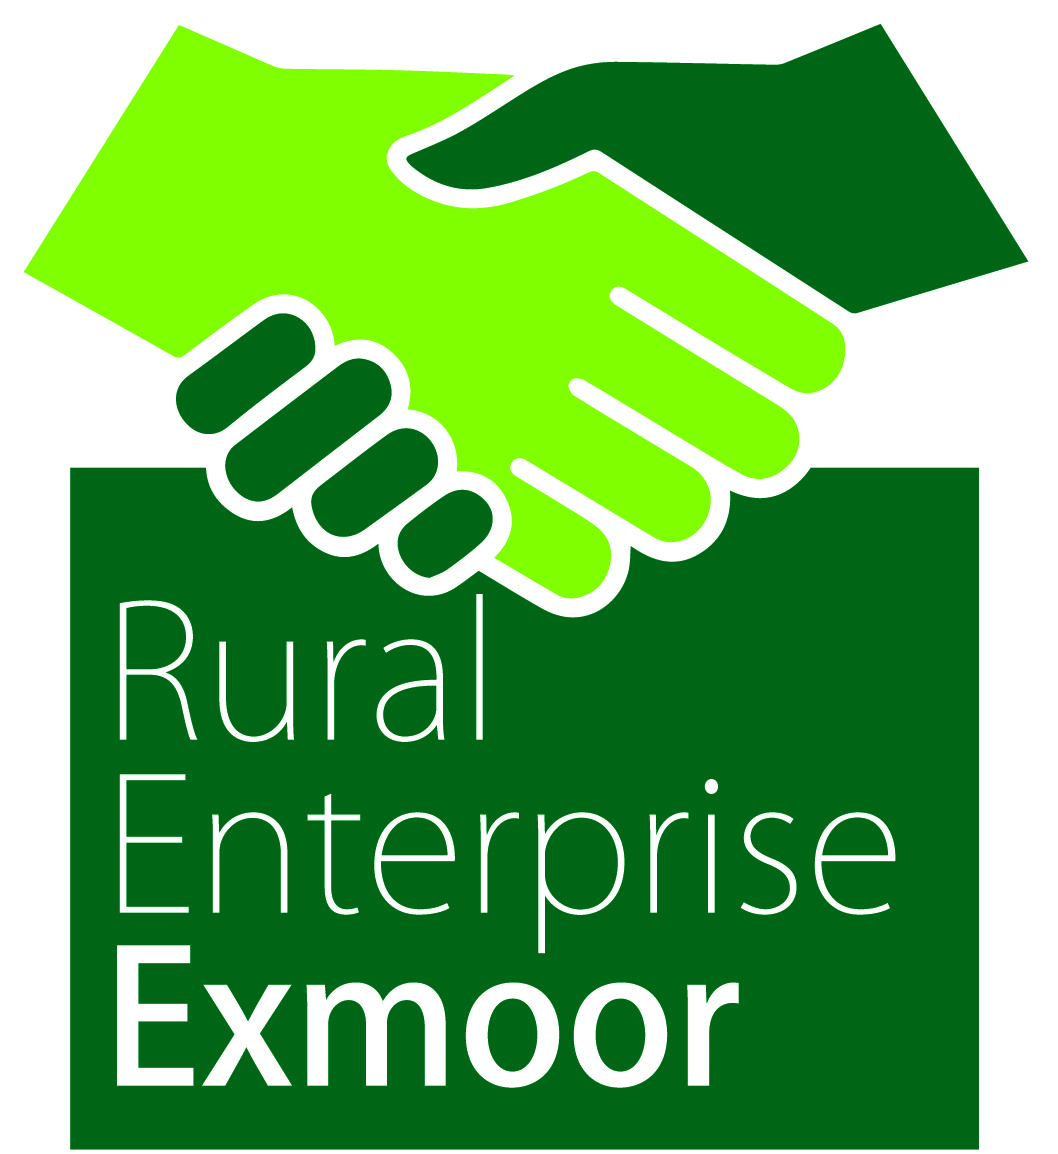 Rural Enterprise Exmoor logo